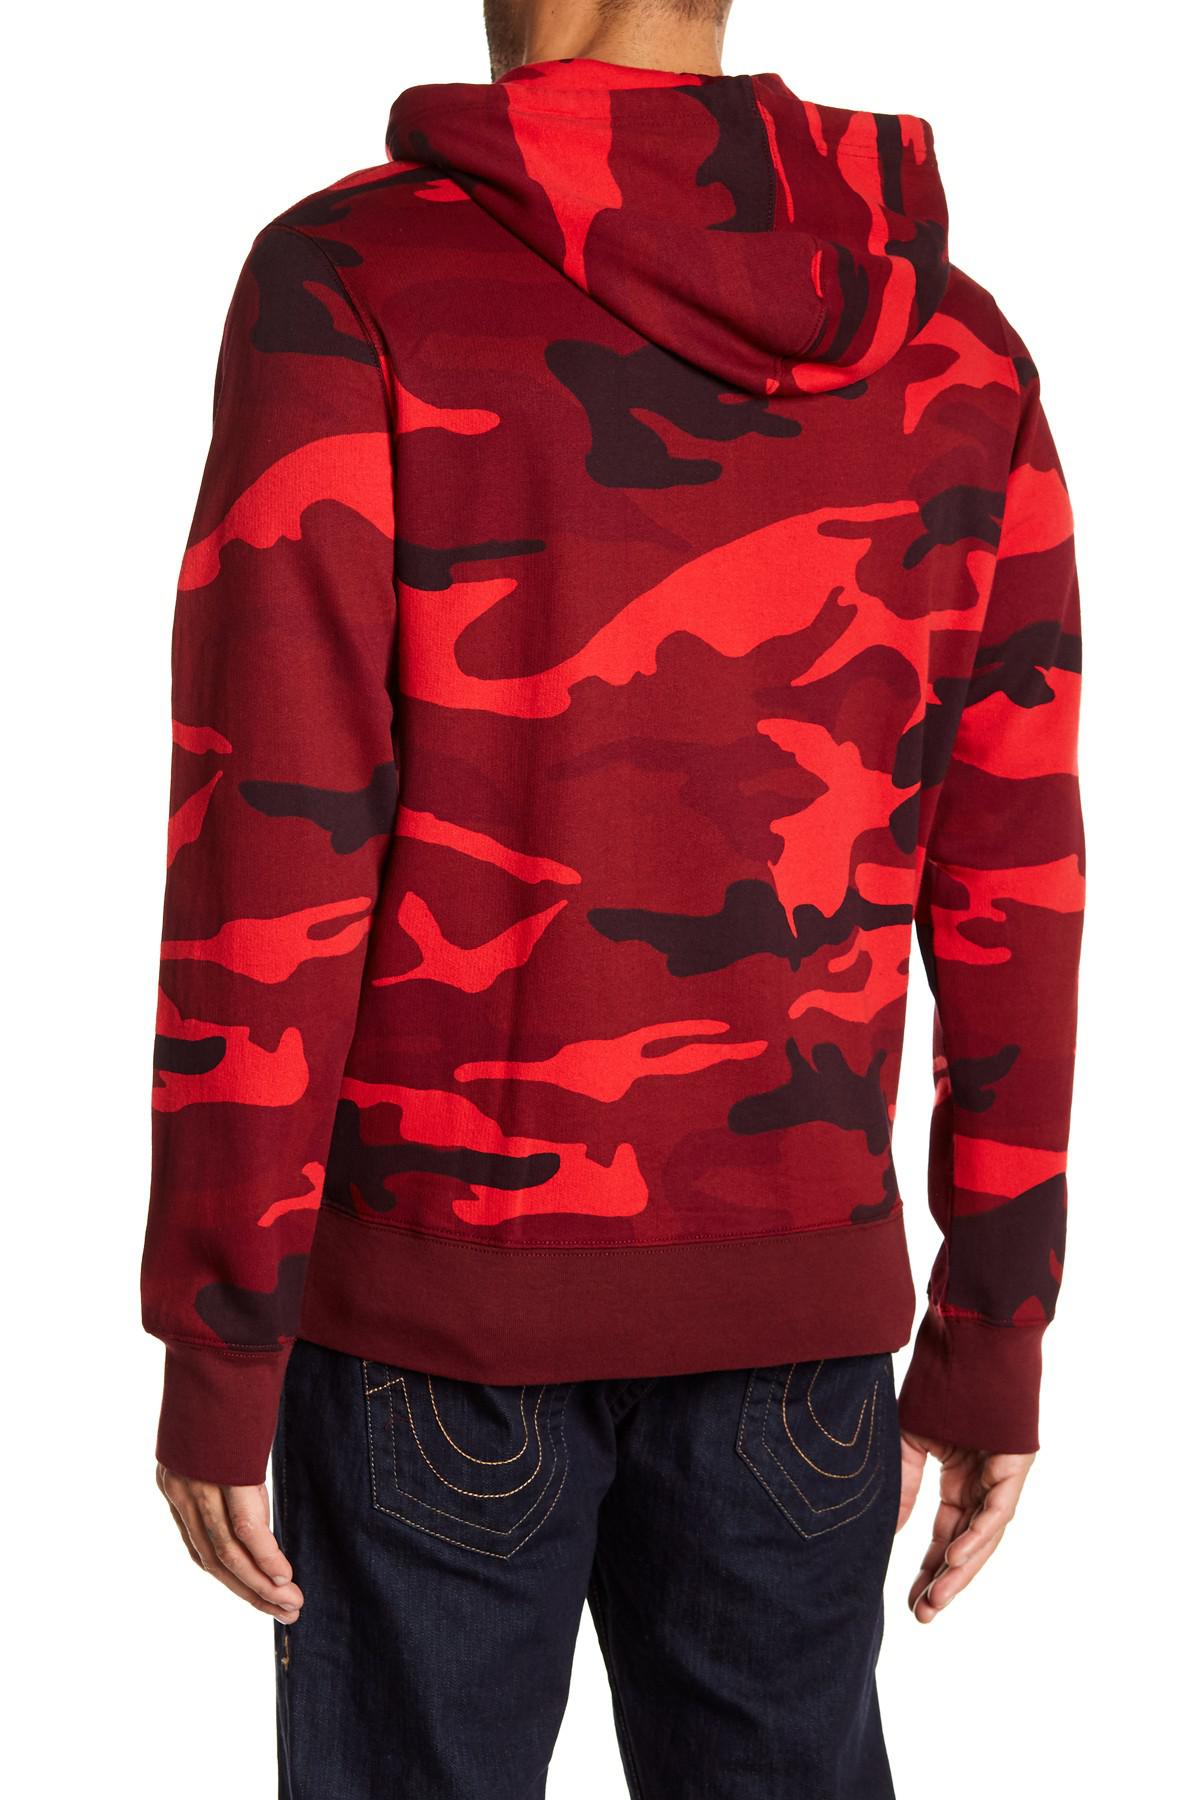 true religion red camo hoodie